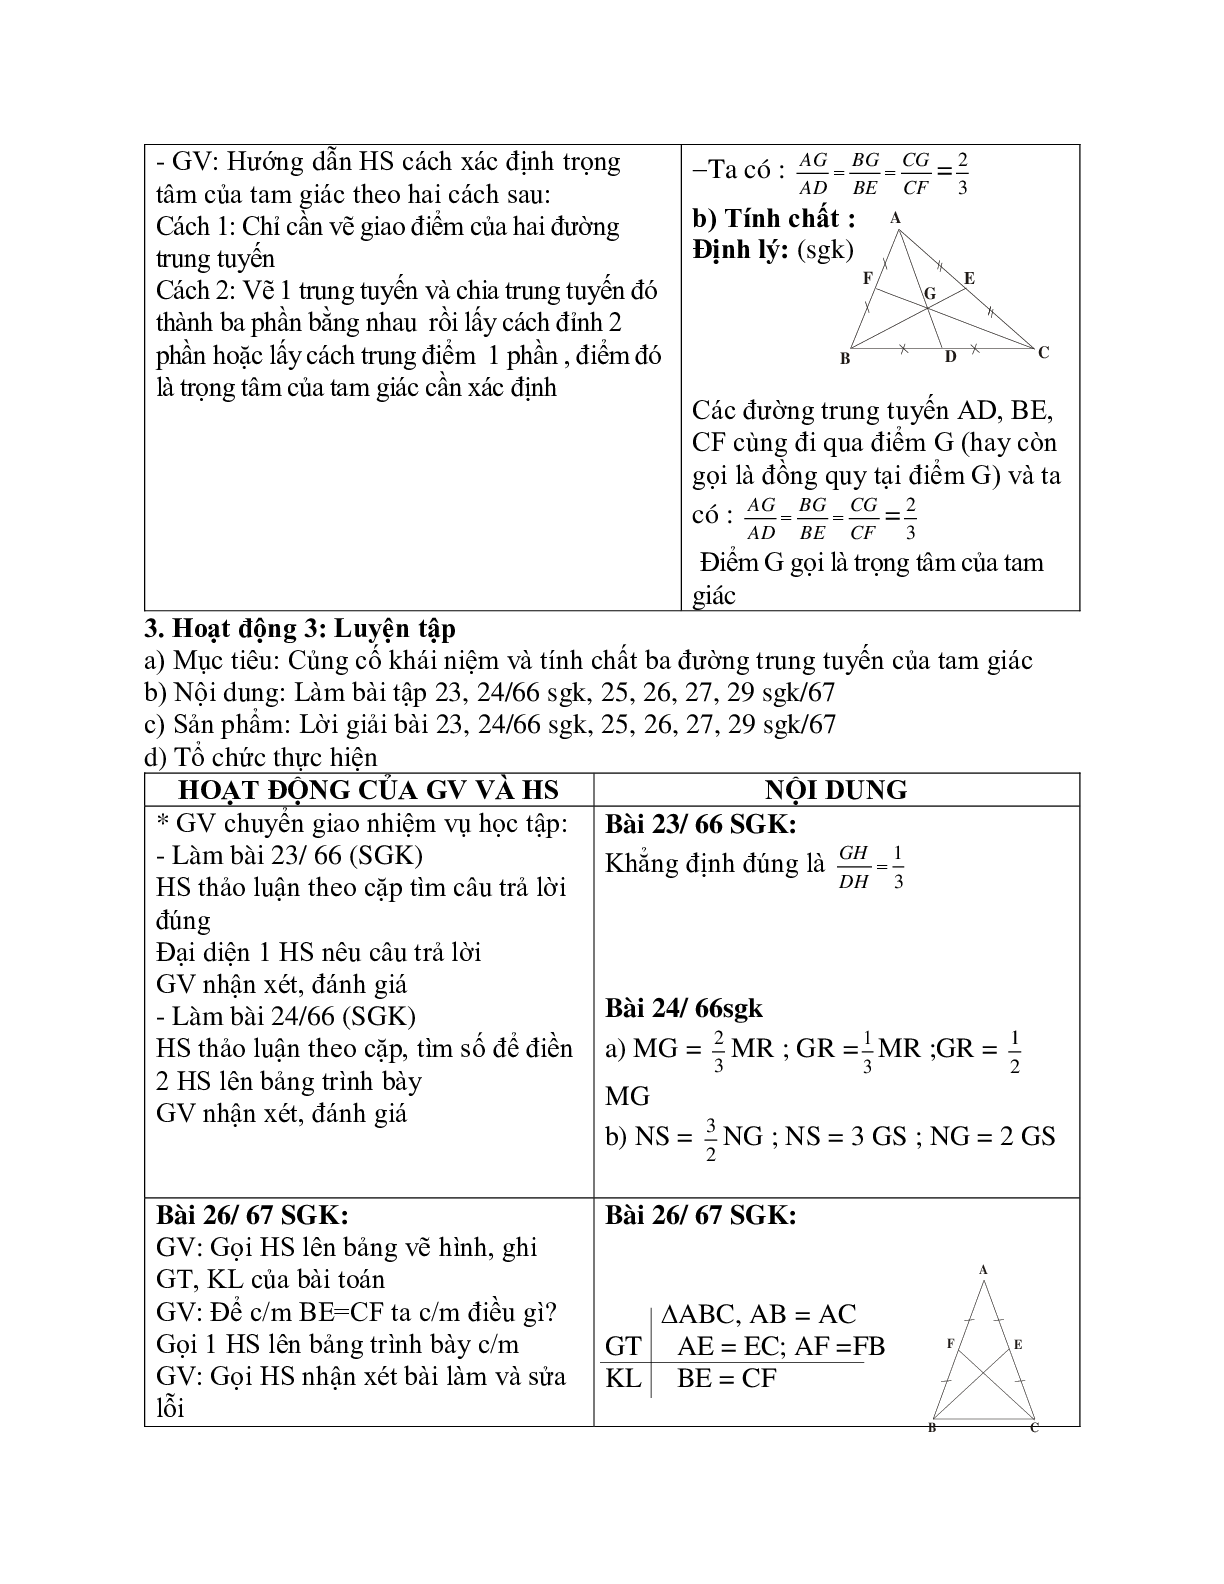 Giáo án Toán học 7 bài 4: Tính chất ba đường trung tuyến của tam giác chuẩn nhất (trang 3)